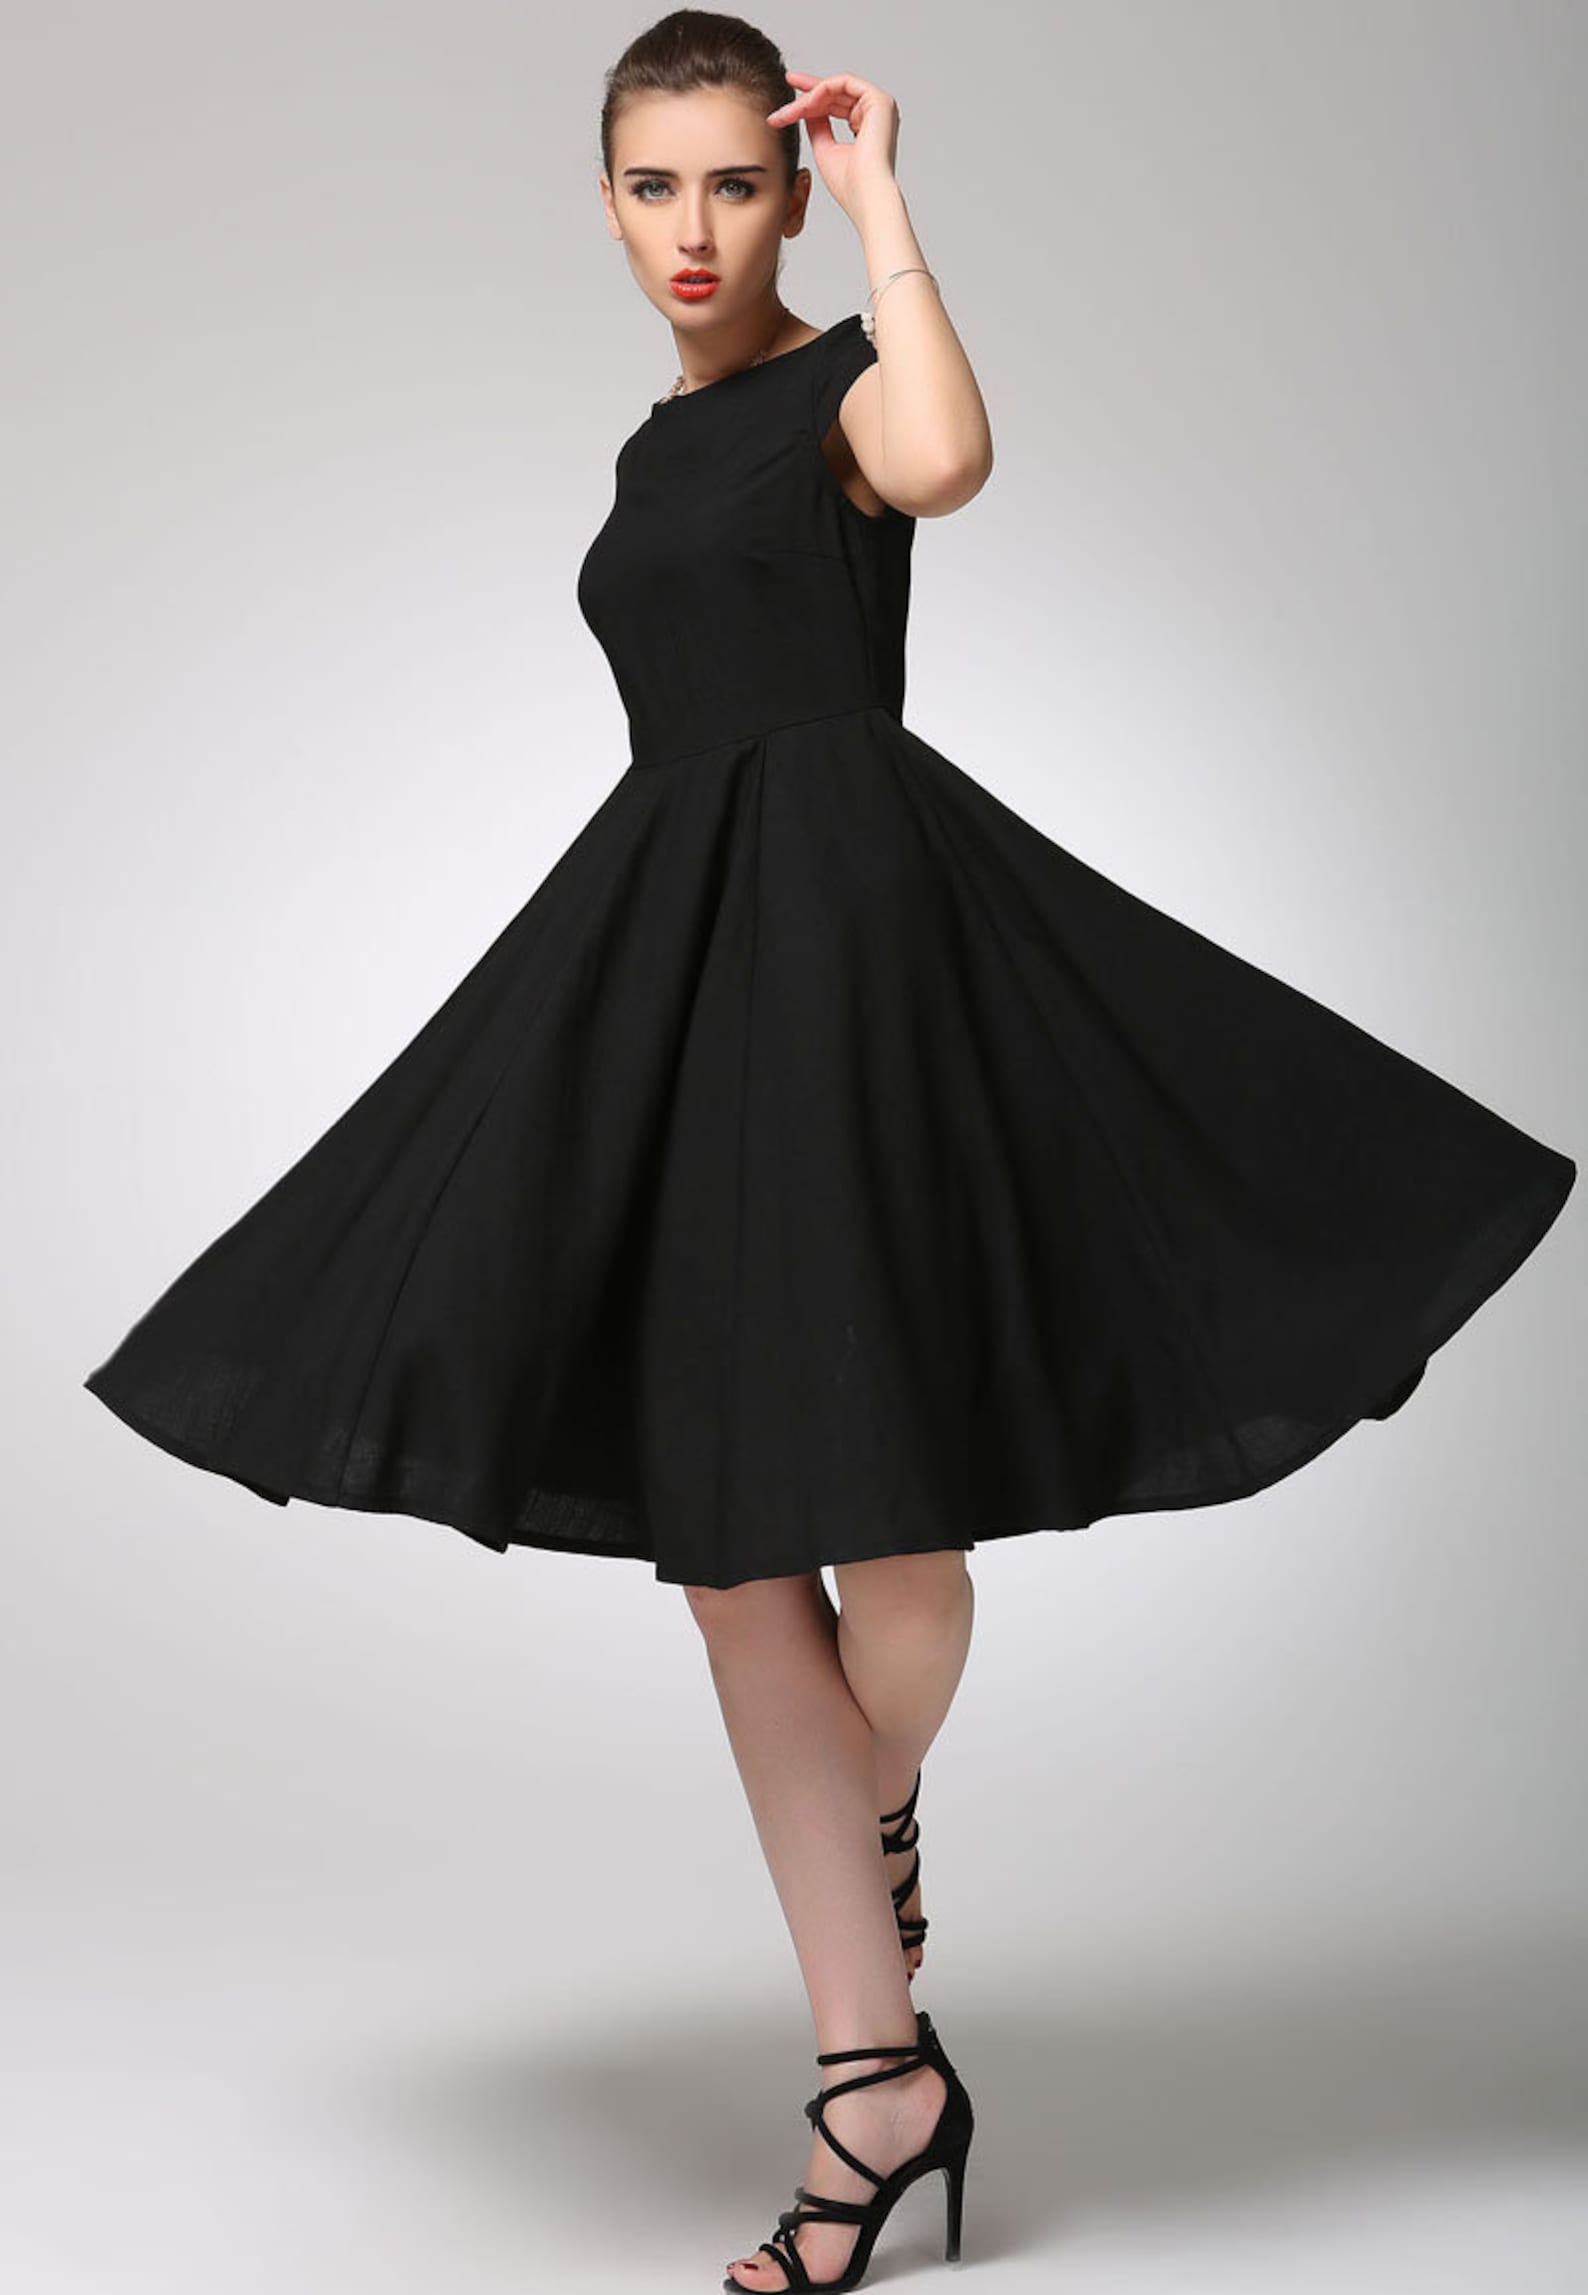 Little black dress Knee Length Swing dress Cap sleeve Modest | Etsy